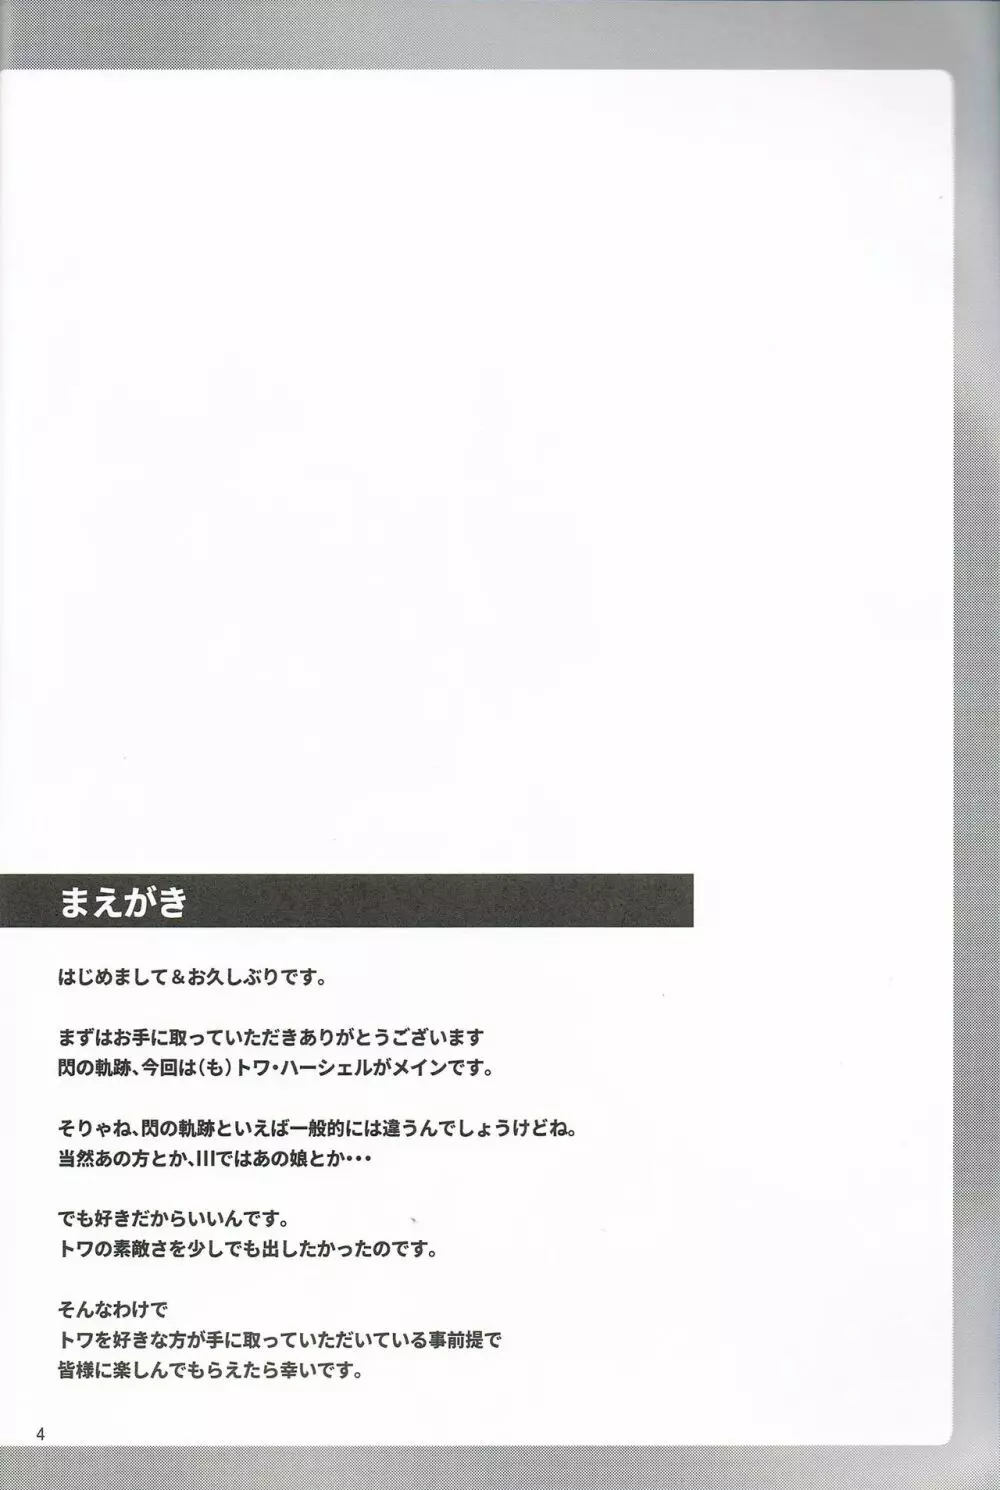 TOWATOWA -第II分校編- 3ページ